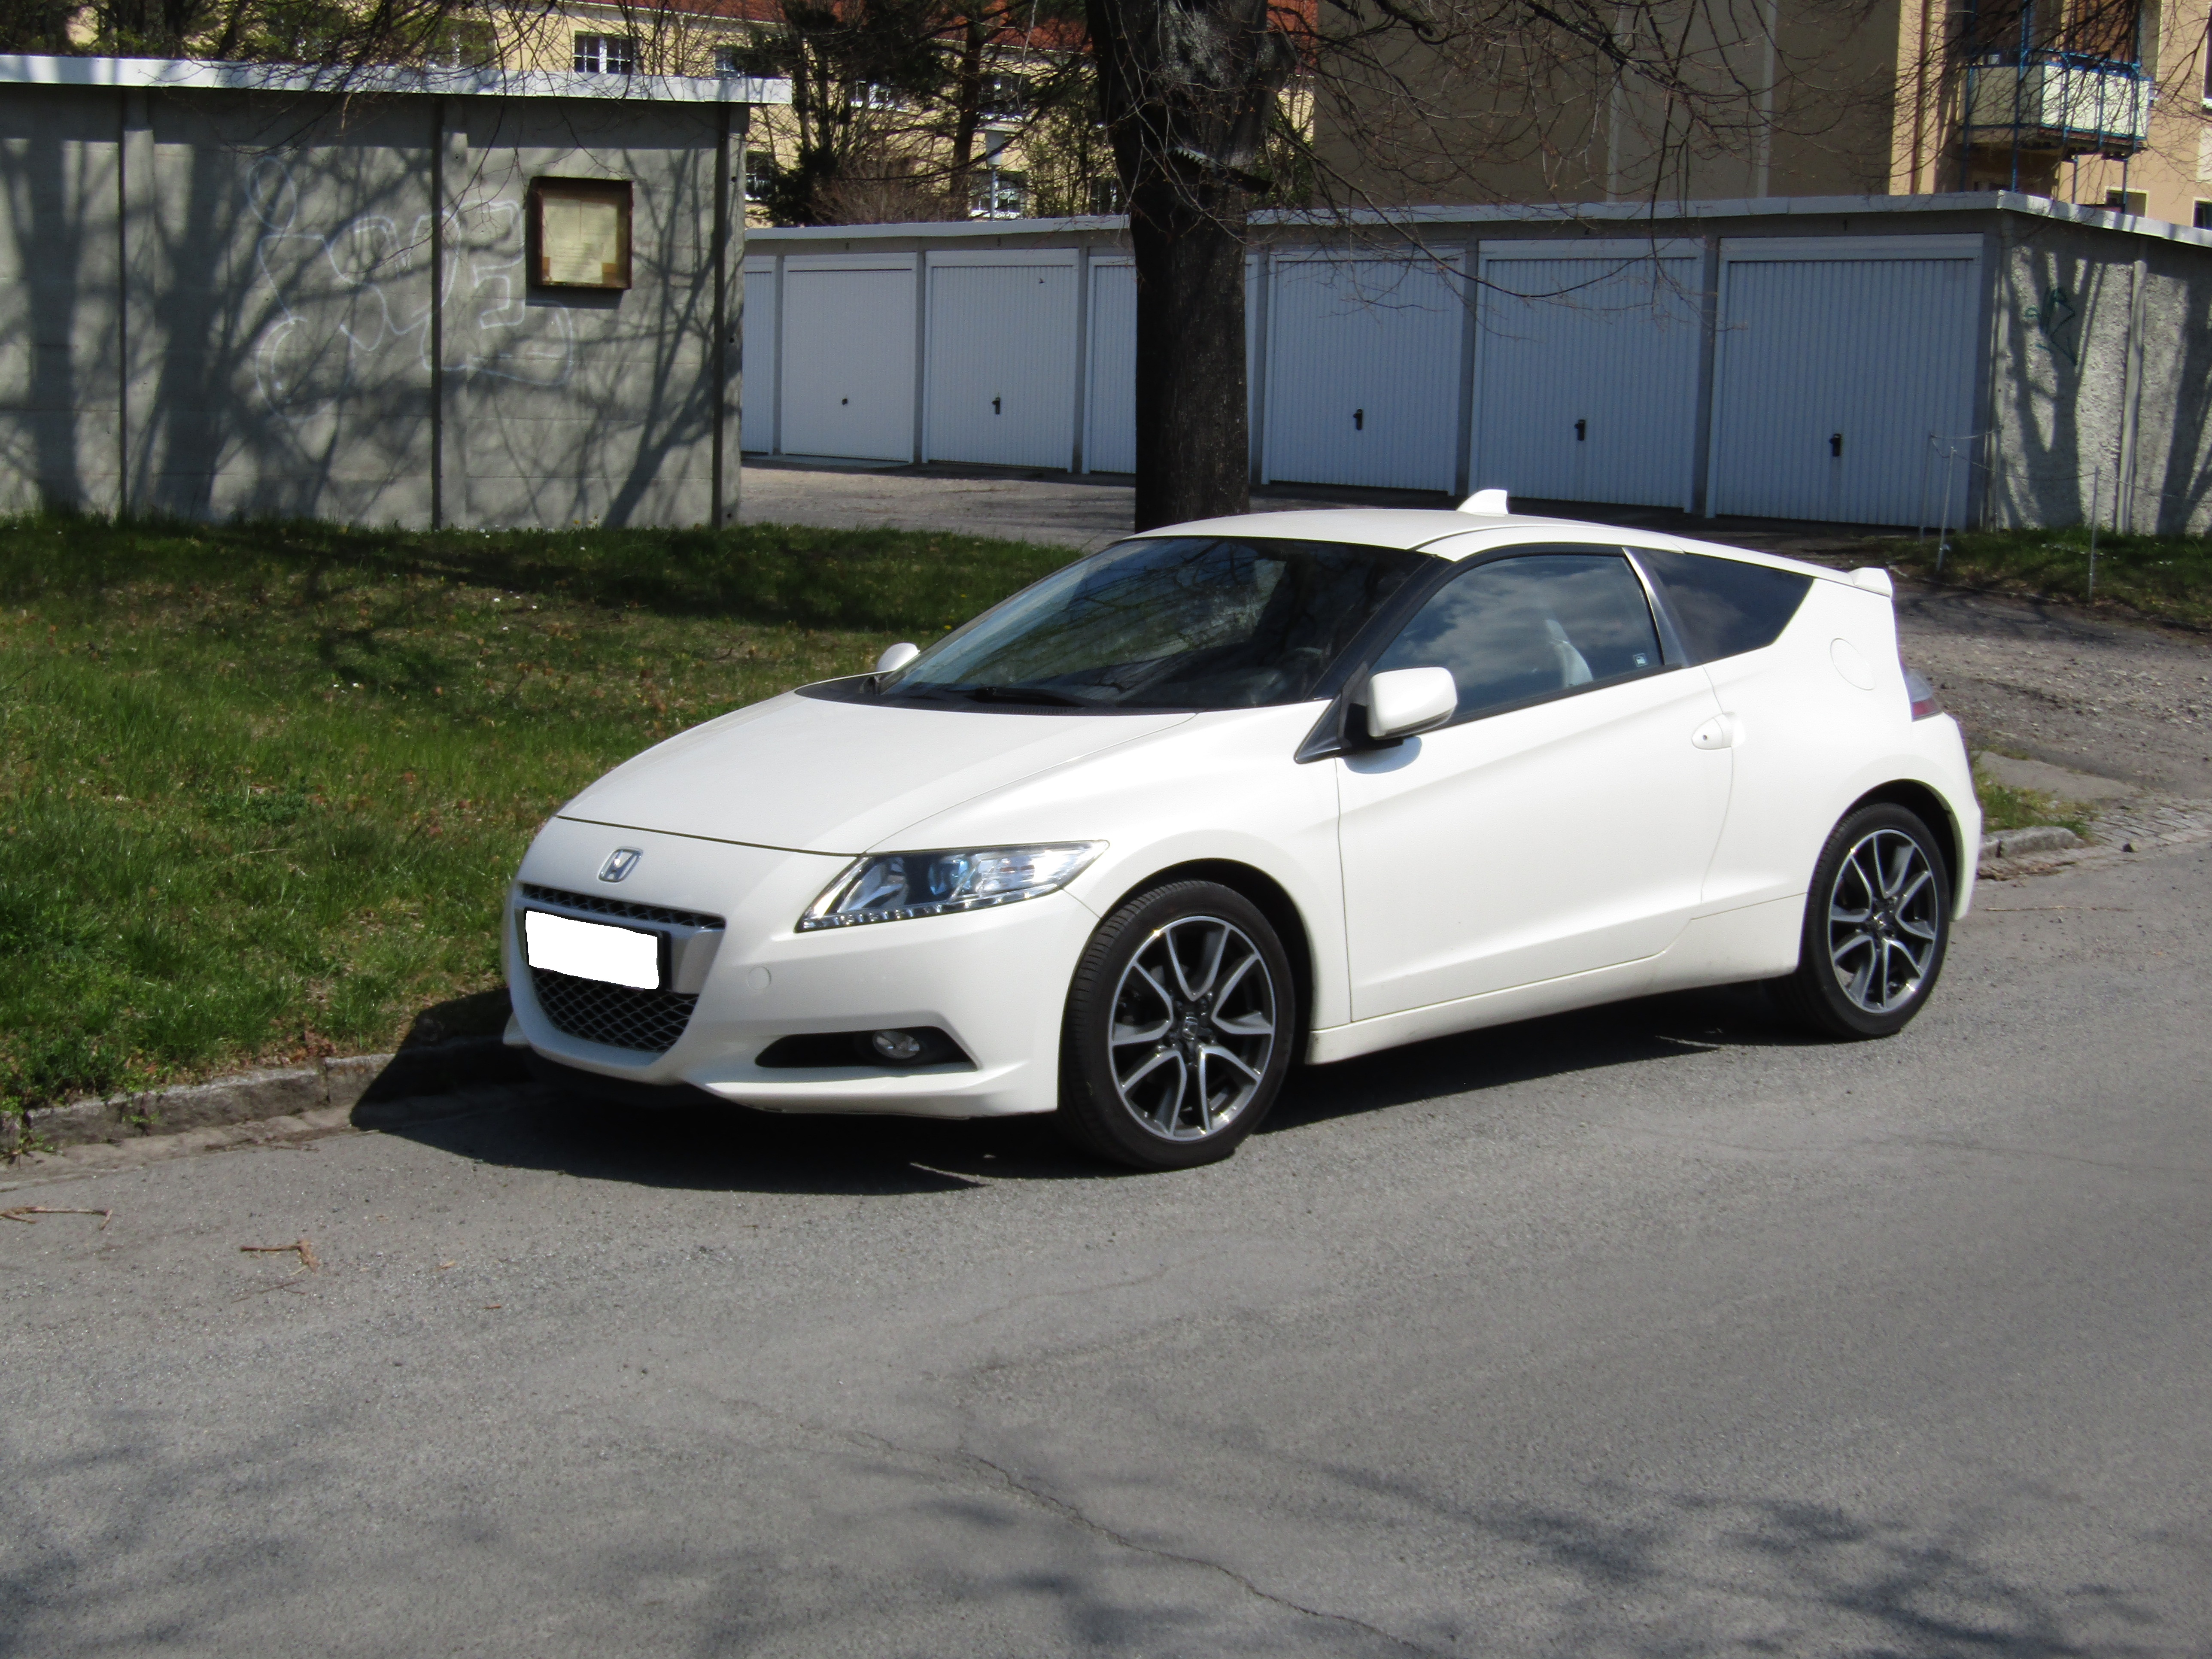 File:White Honda CR-Z (side).jpg - Wikimedia Commons